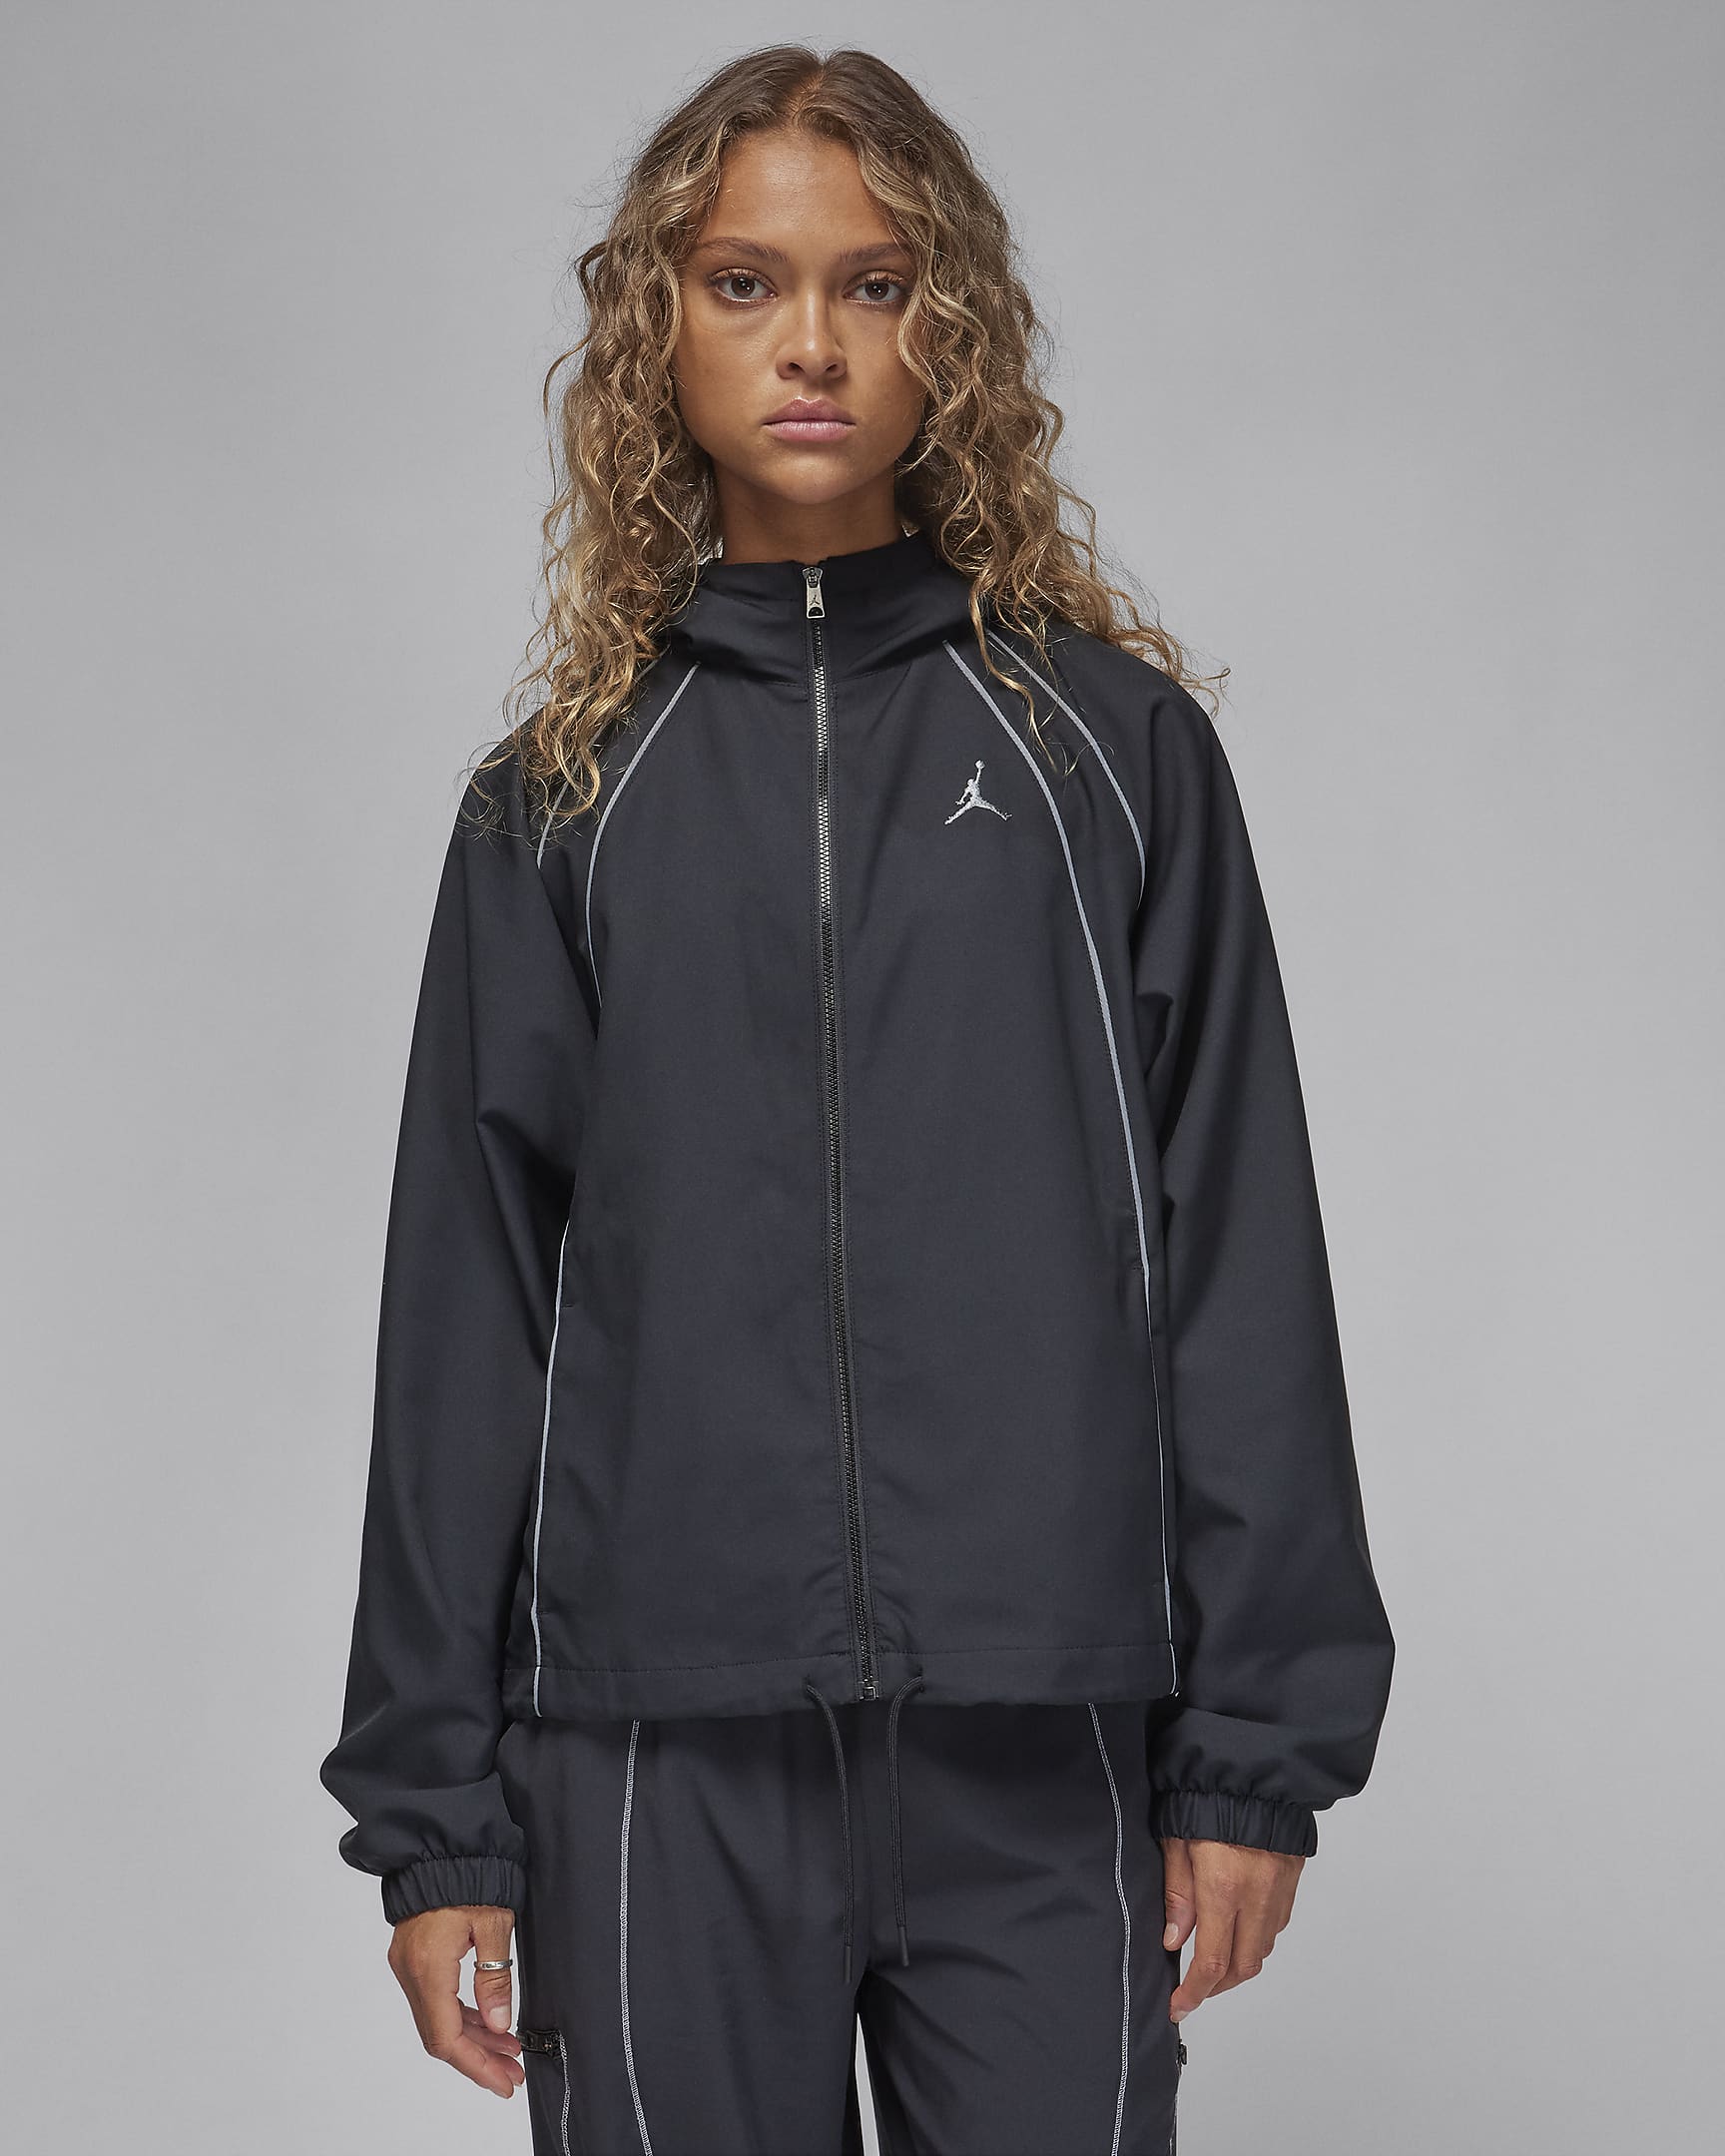 Jordan Women's Woven Lined Jacket. Nike UK